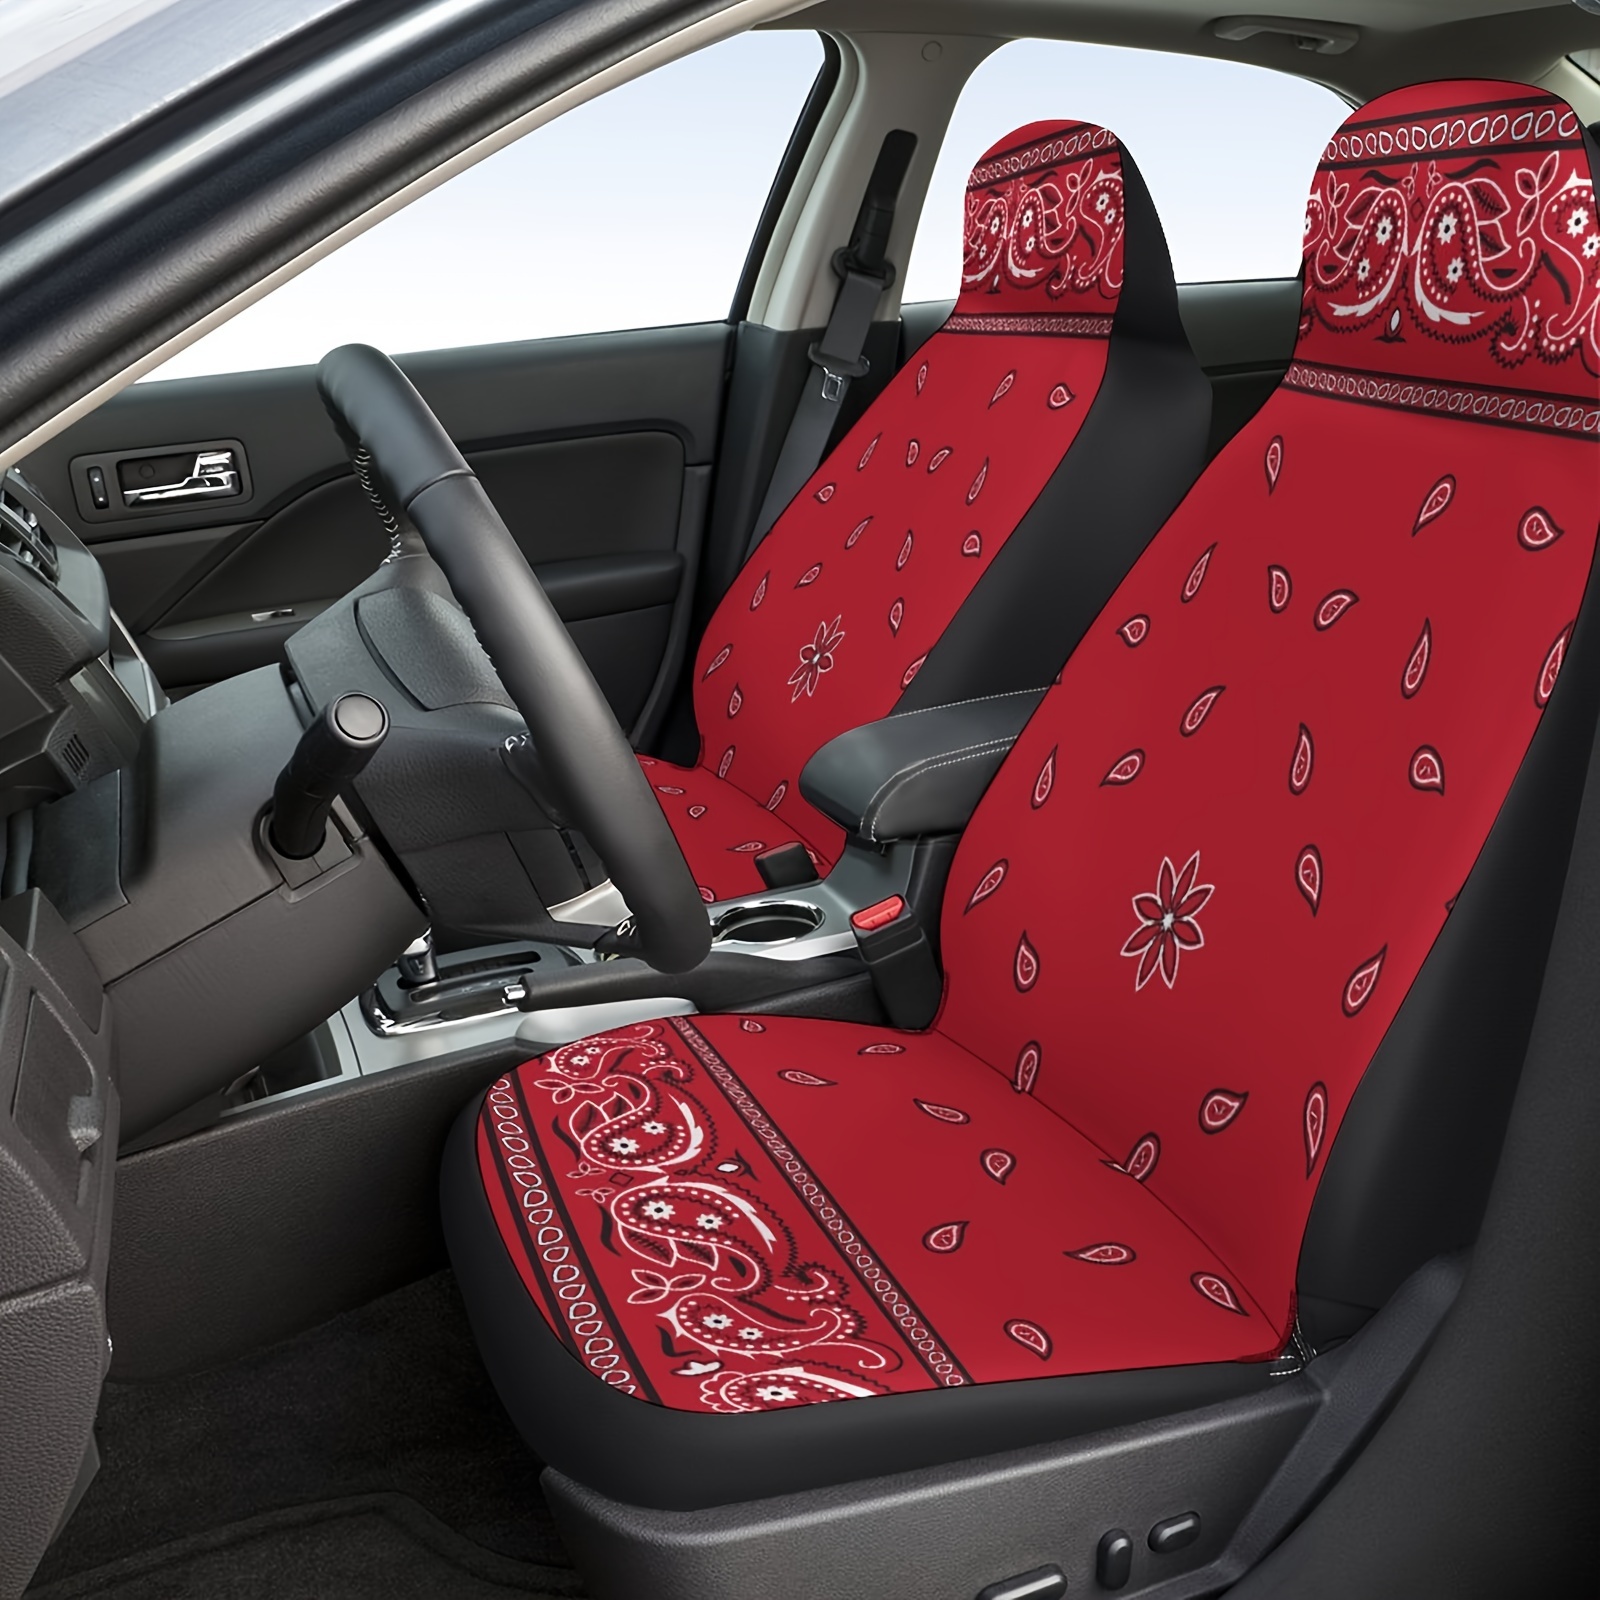  Coverado Juego completo de fundas para asientos de coche, de  piel de napa de alta calidad, con patrón en relieve, accesorios interiores  de ajuste universal para la mayoría de coches, sedanes